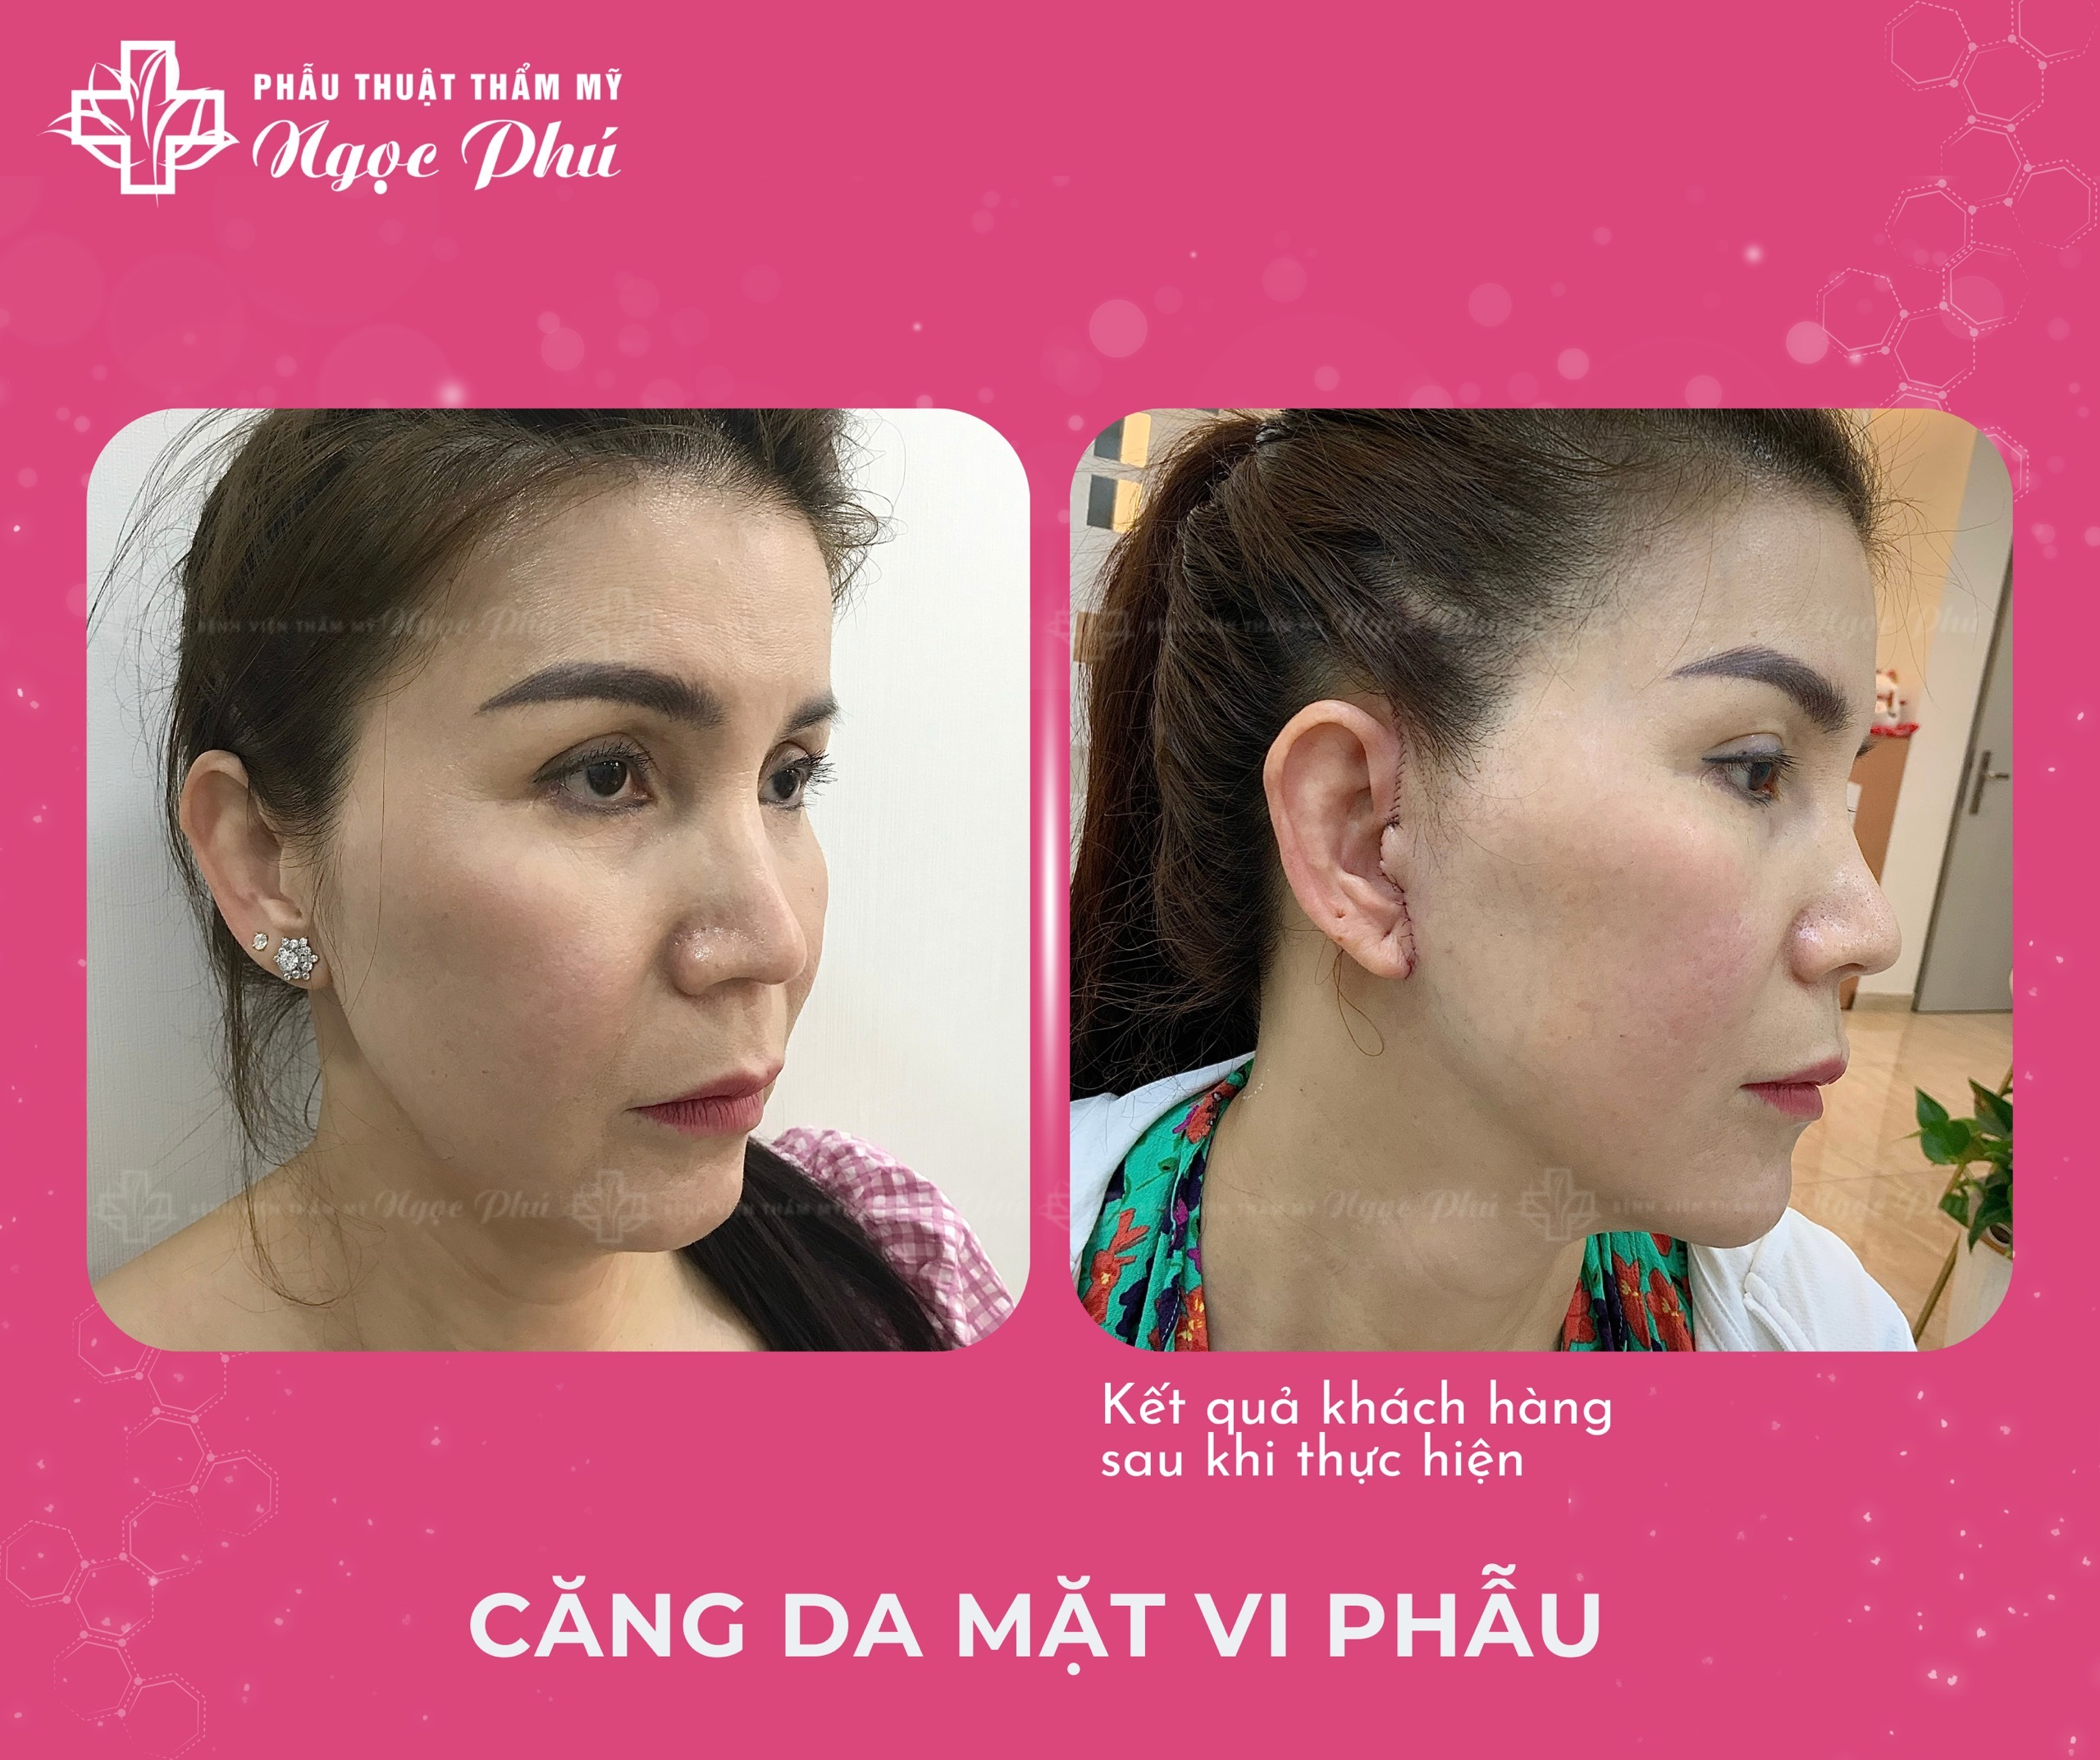 Kết quả của khách hàng về chăm sóc sau phẫu thuật căng da mặt tại Ngọc Phú